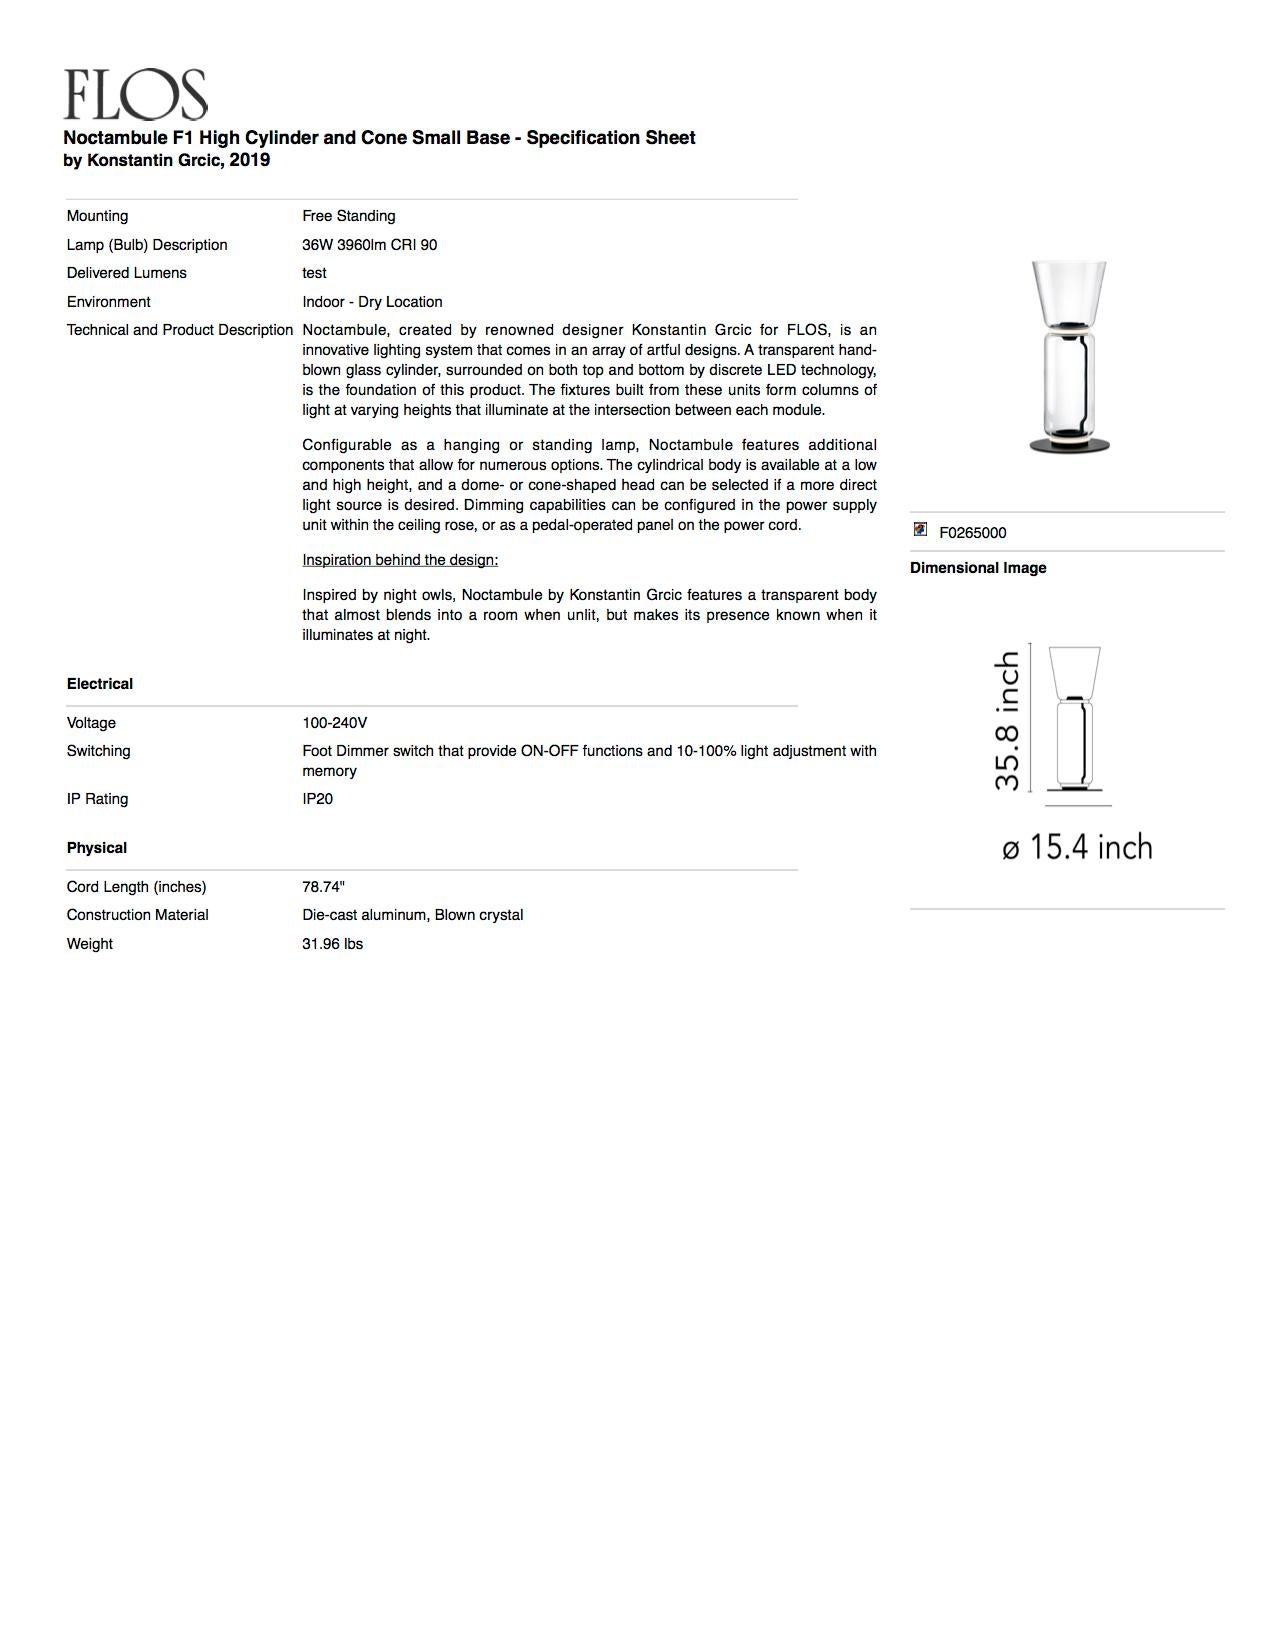 Lampadaire Flos Noctambule avec cylindre, cône et base de Konstantin Grcic en vente 1